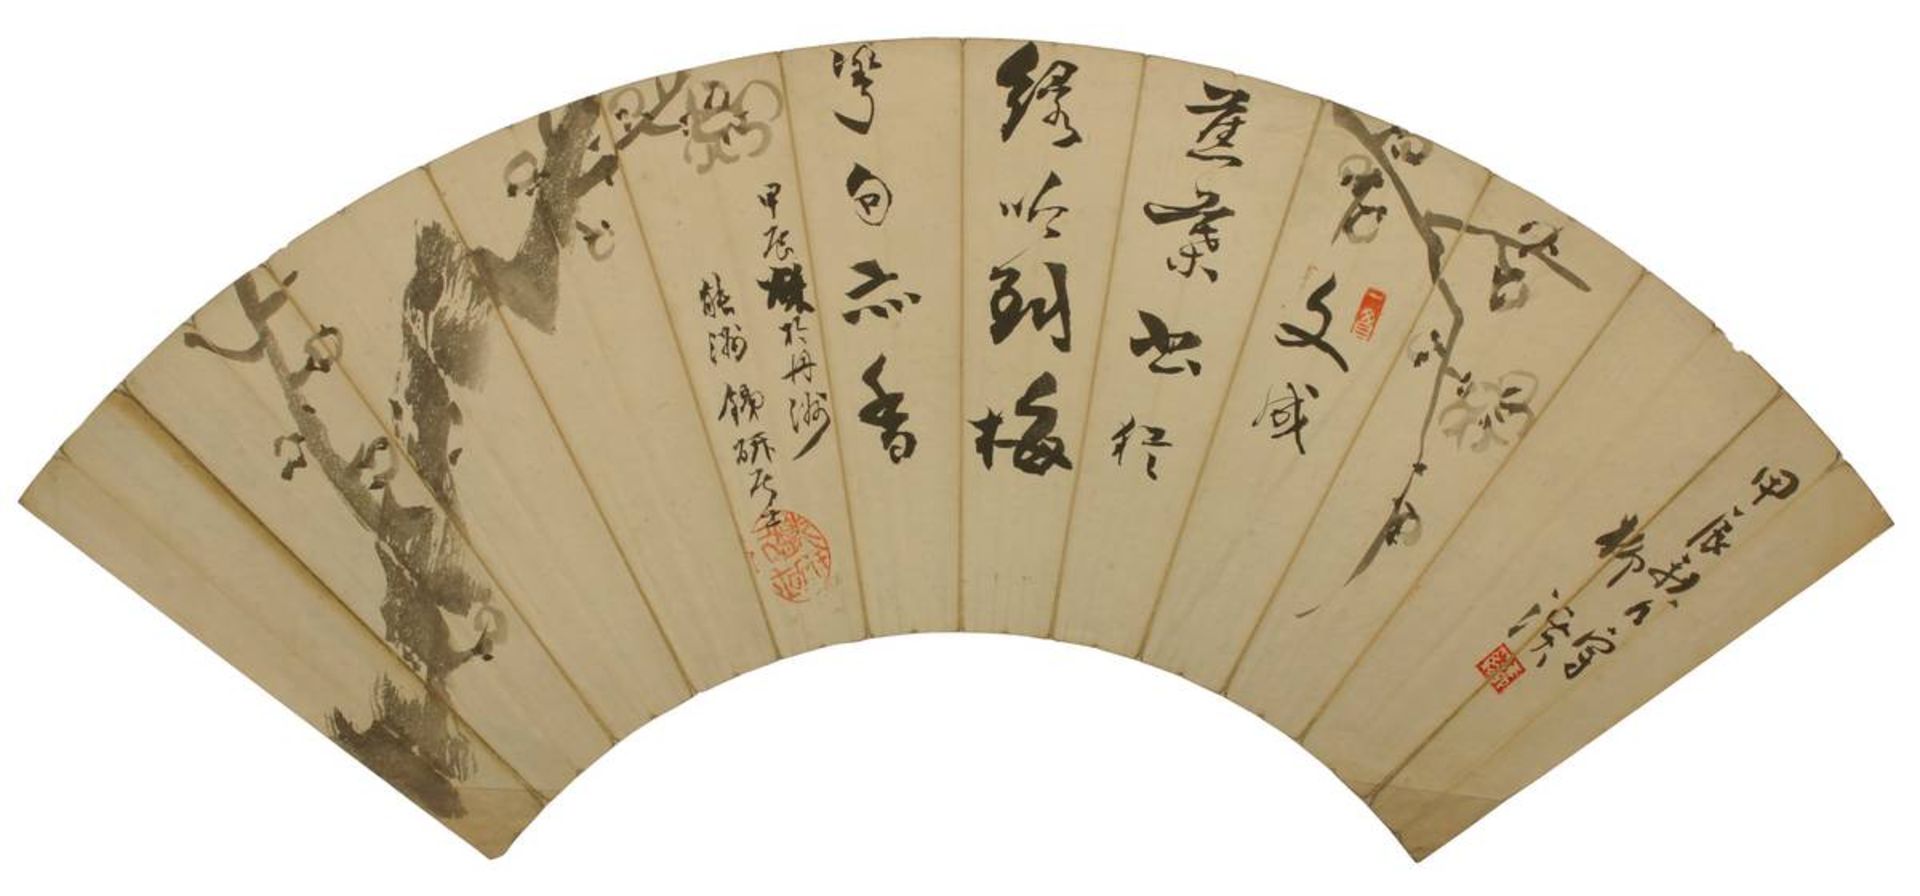 2 bemalte japanische Faltfächerblätter, jew. unter Folie mit Fotoecken auf Karton montiert, Karton - Bild 2 aus 3